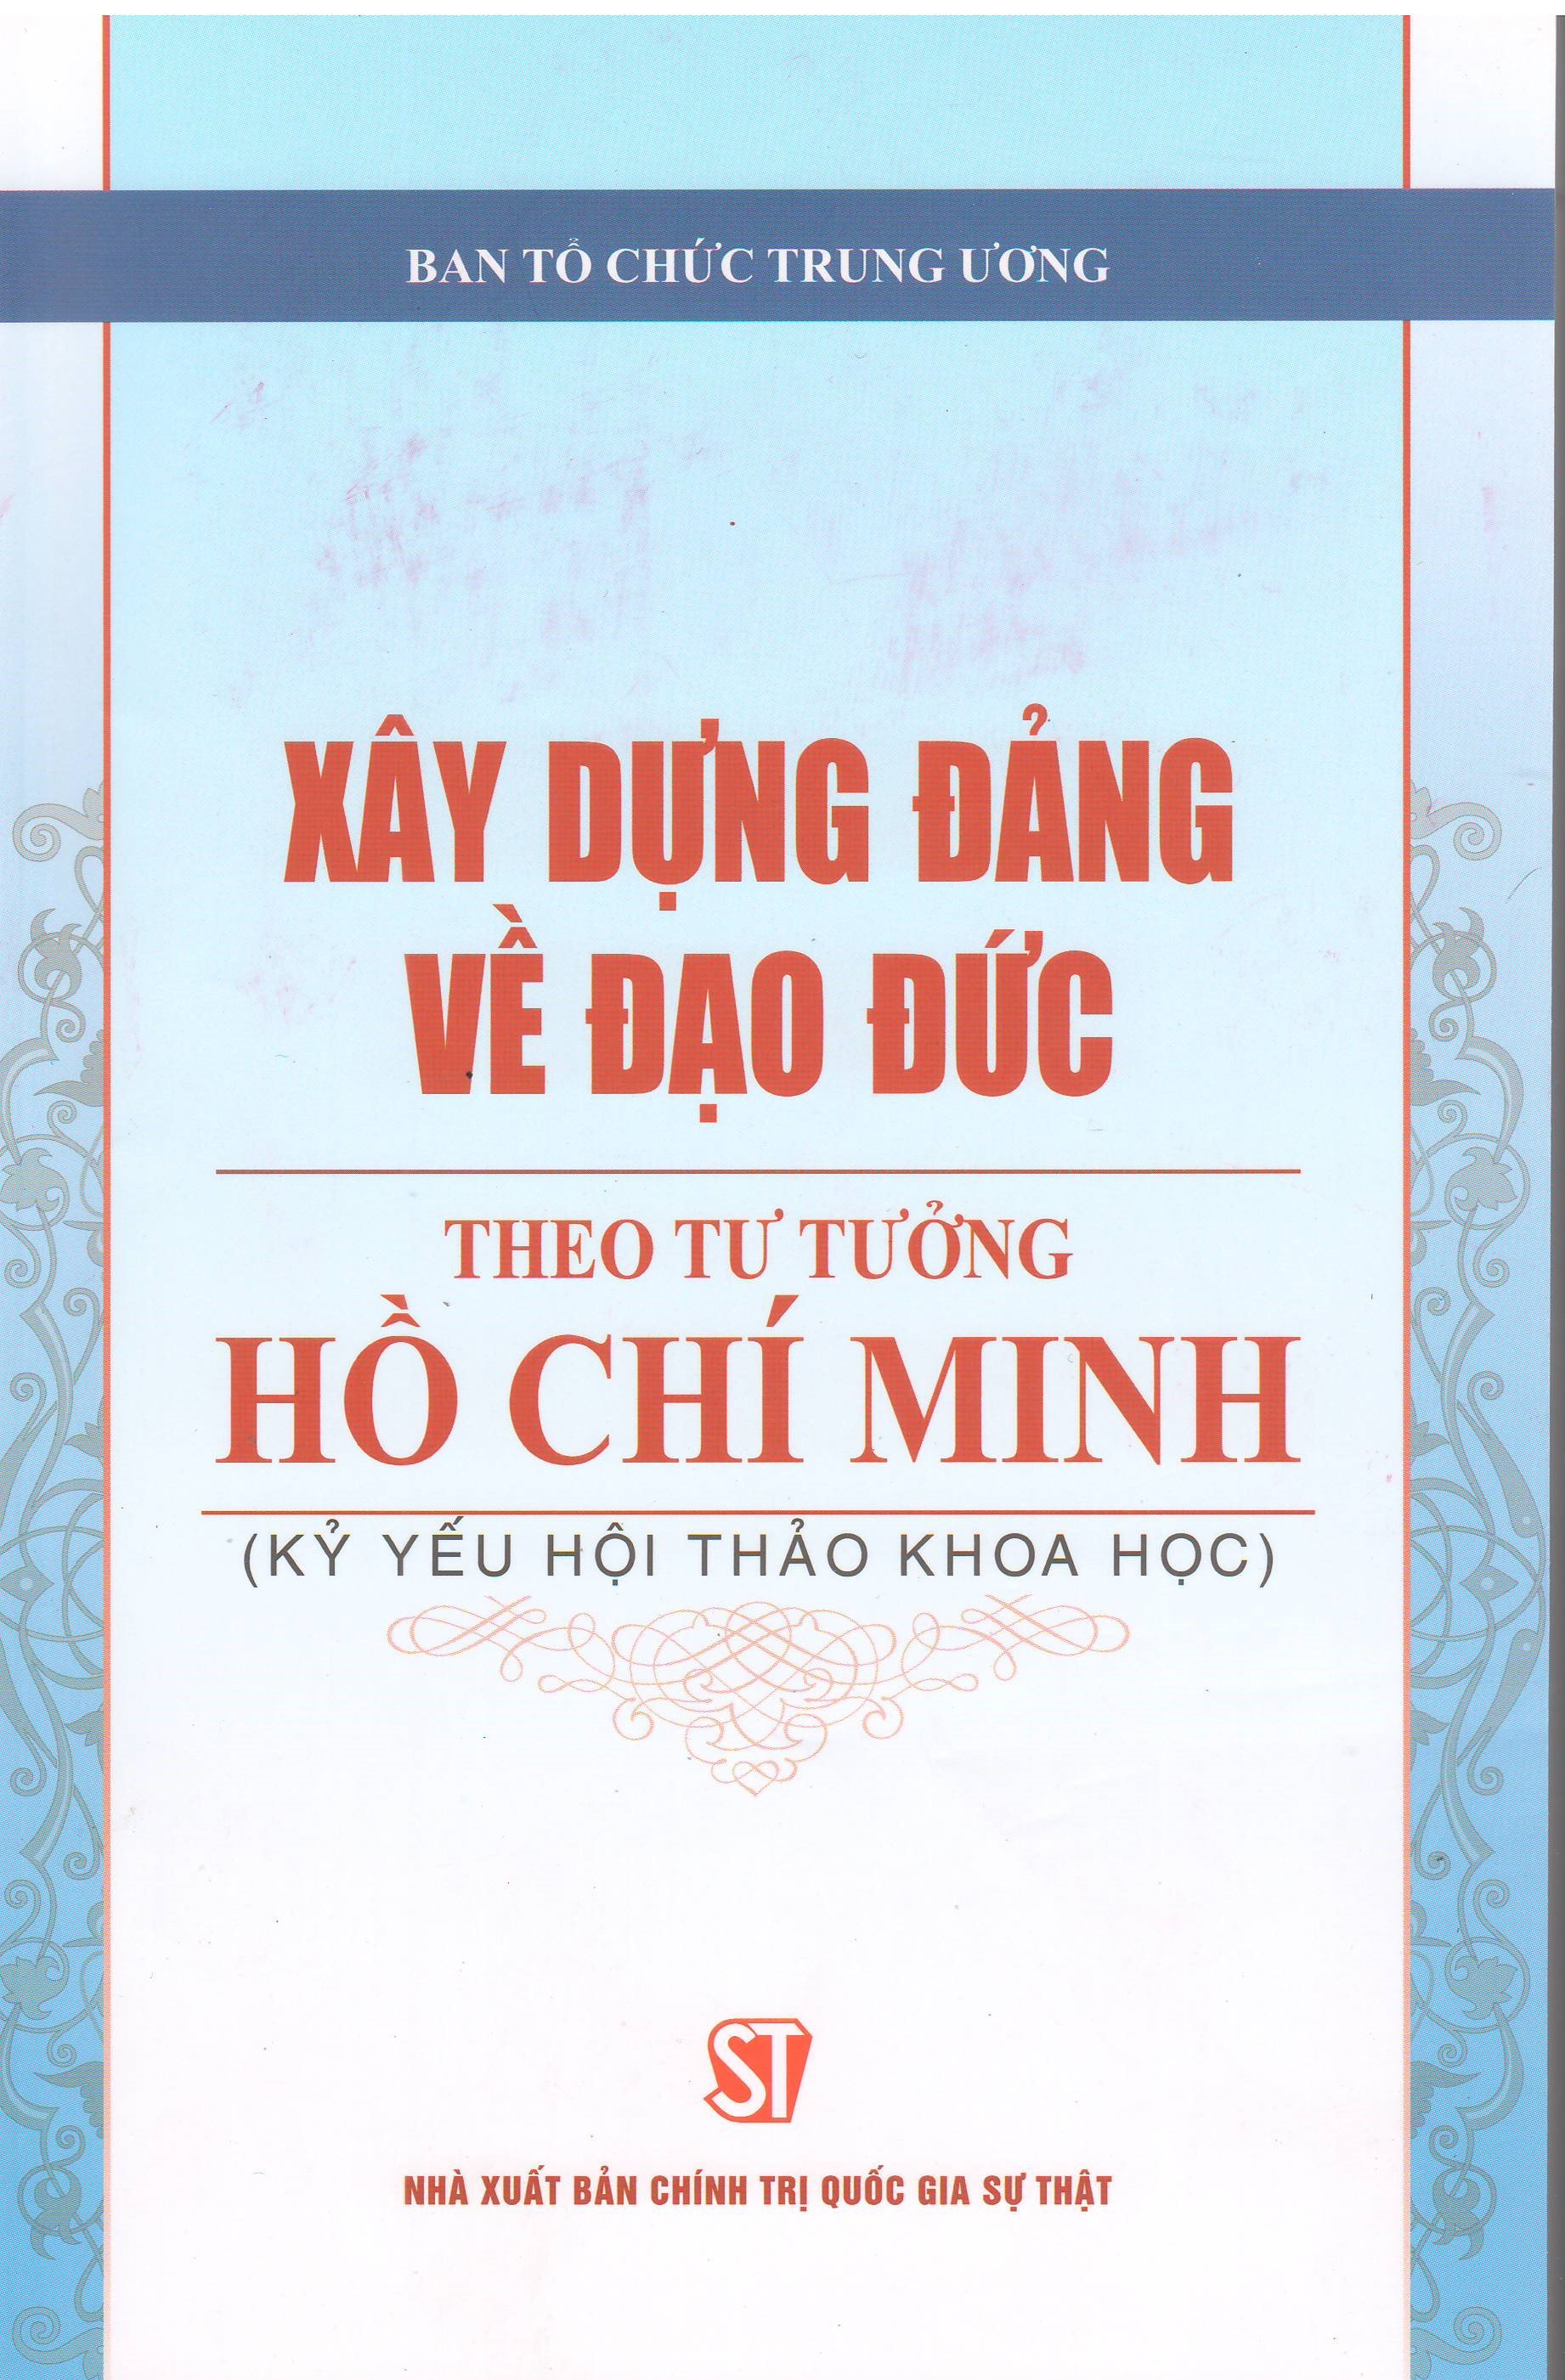 Xây dựng Đảng về đạo đức theo tư tưởng Hồ Chí Minh (Kỷ yếu Hội thảo khoa học)